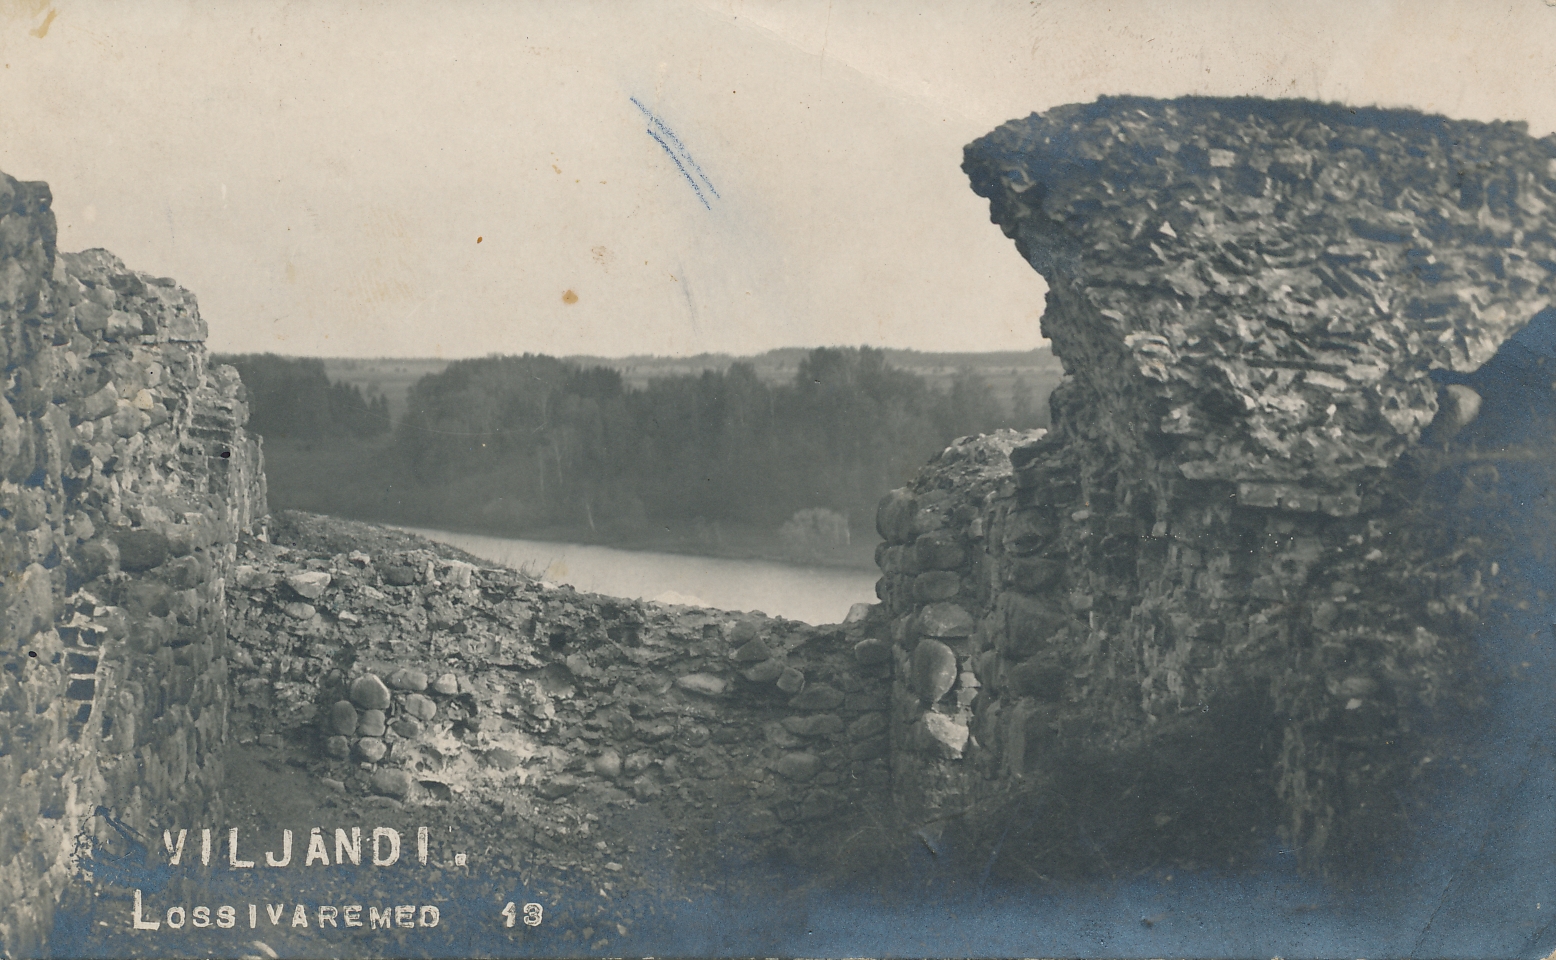 foto, Viljandi, lossimäed, Kaevumägi, järv, u 1910, foto J. Riet (?)